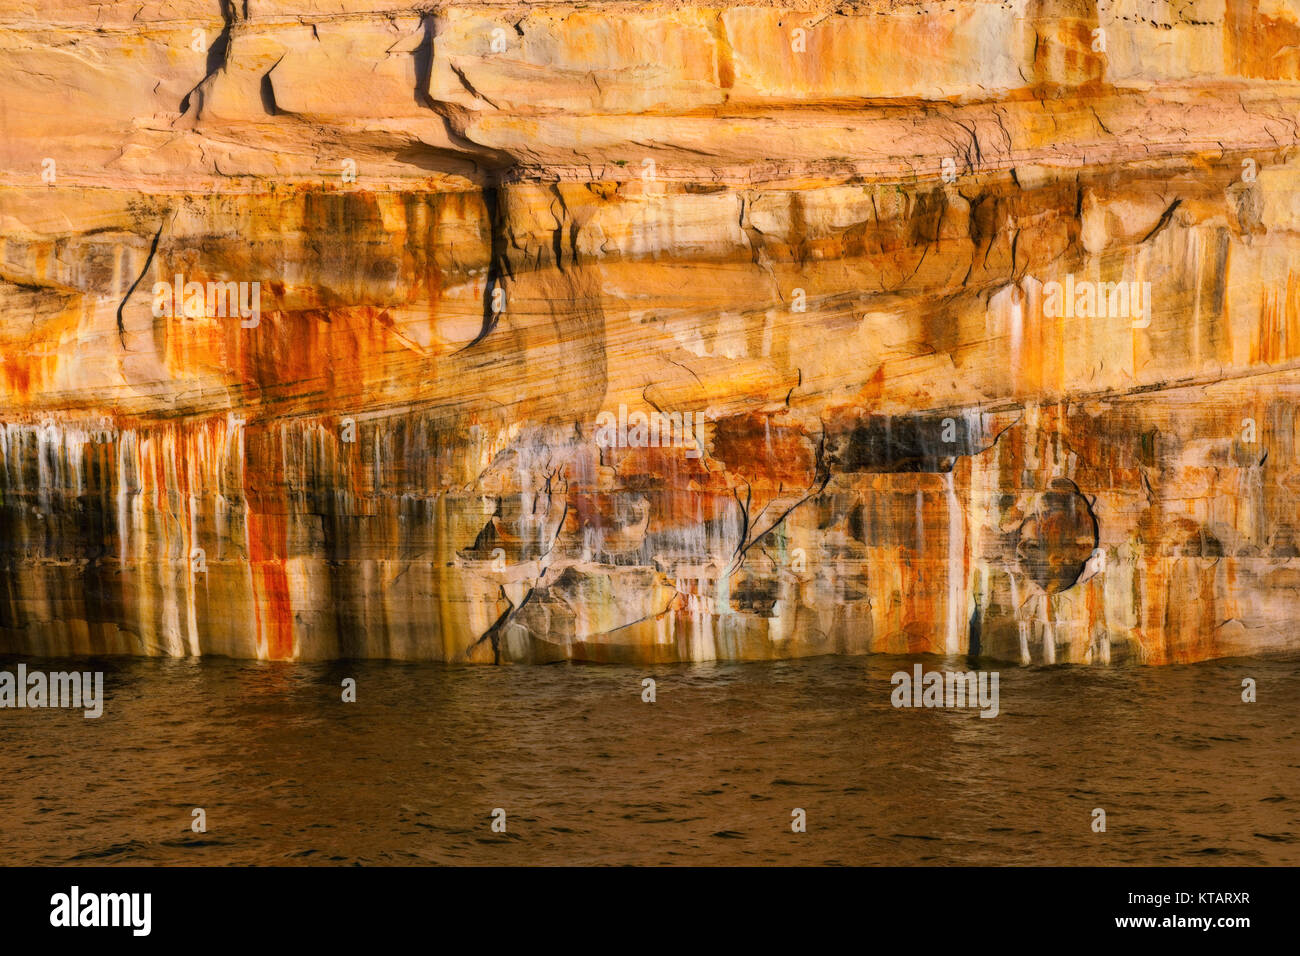 Minéral infiltrer crée couleurs incroyables dans les falaises de grès sur le lac Supérieur et de Pictured Rocks National Lakeshore, dans la Péninsule Supérieure du Michigan. Banque D'Images